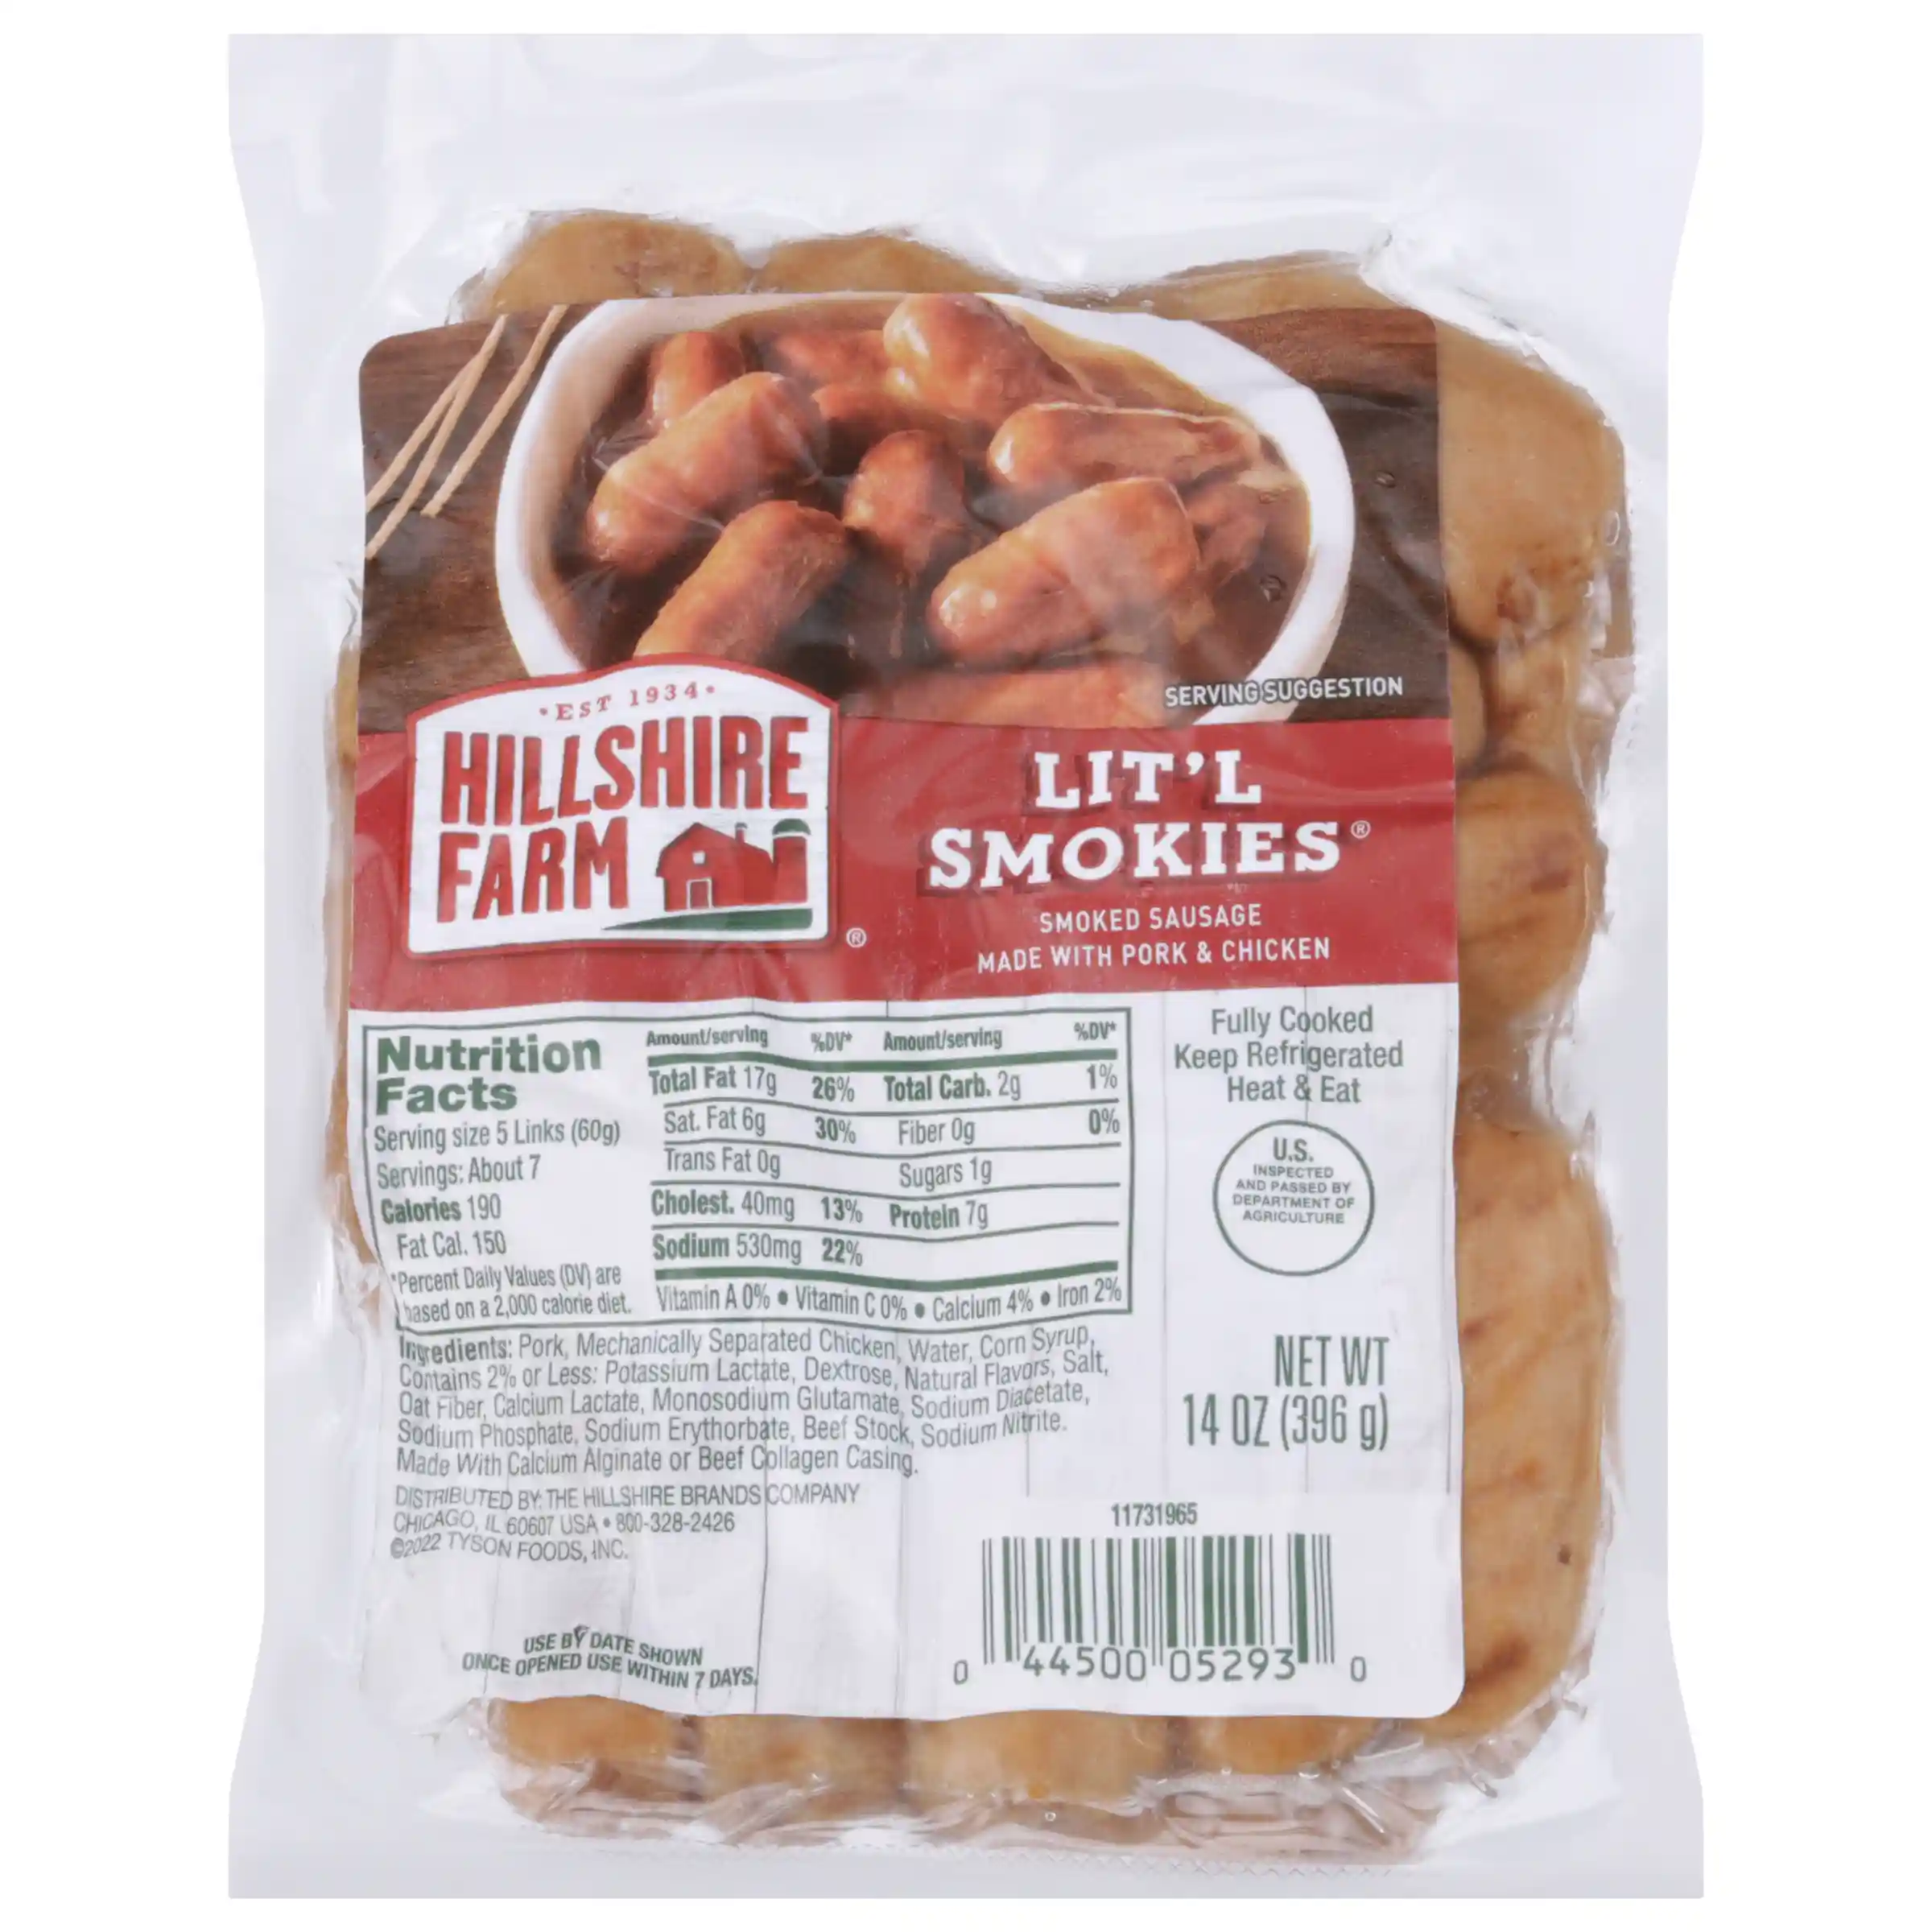 Hillshire Farm Lit'l Smokies Smoked Sausage, 14 oz. _image_11